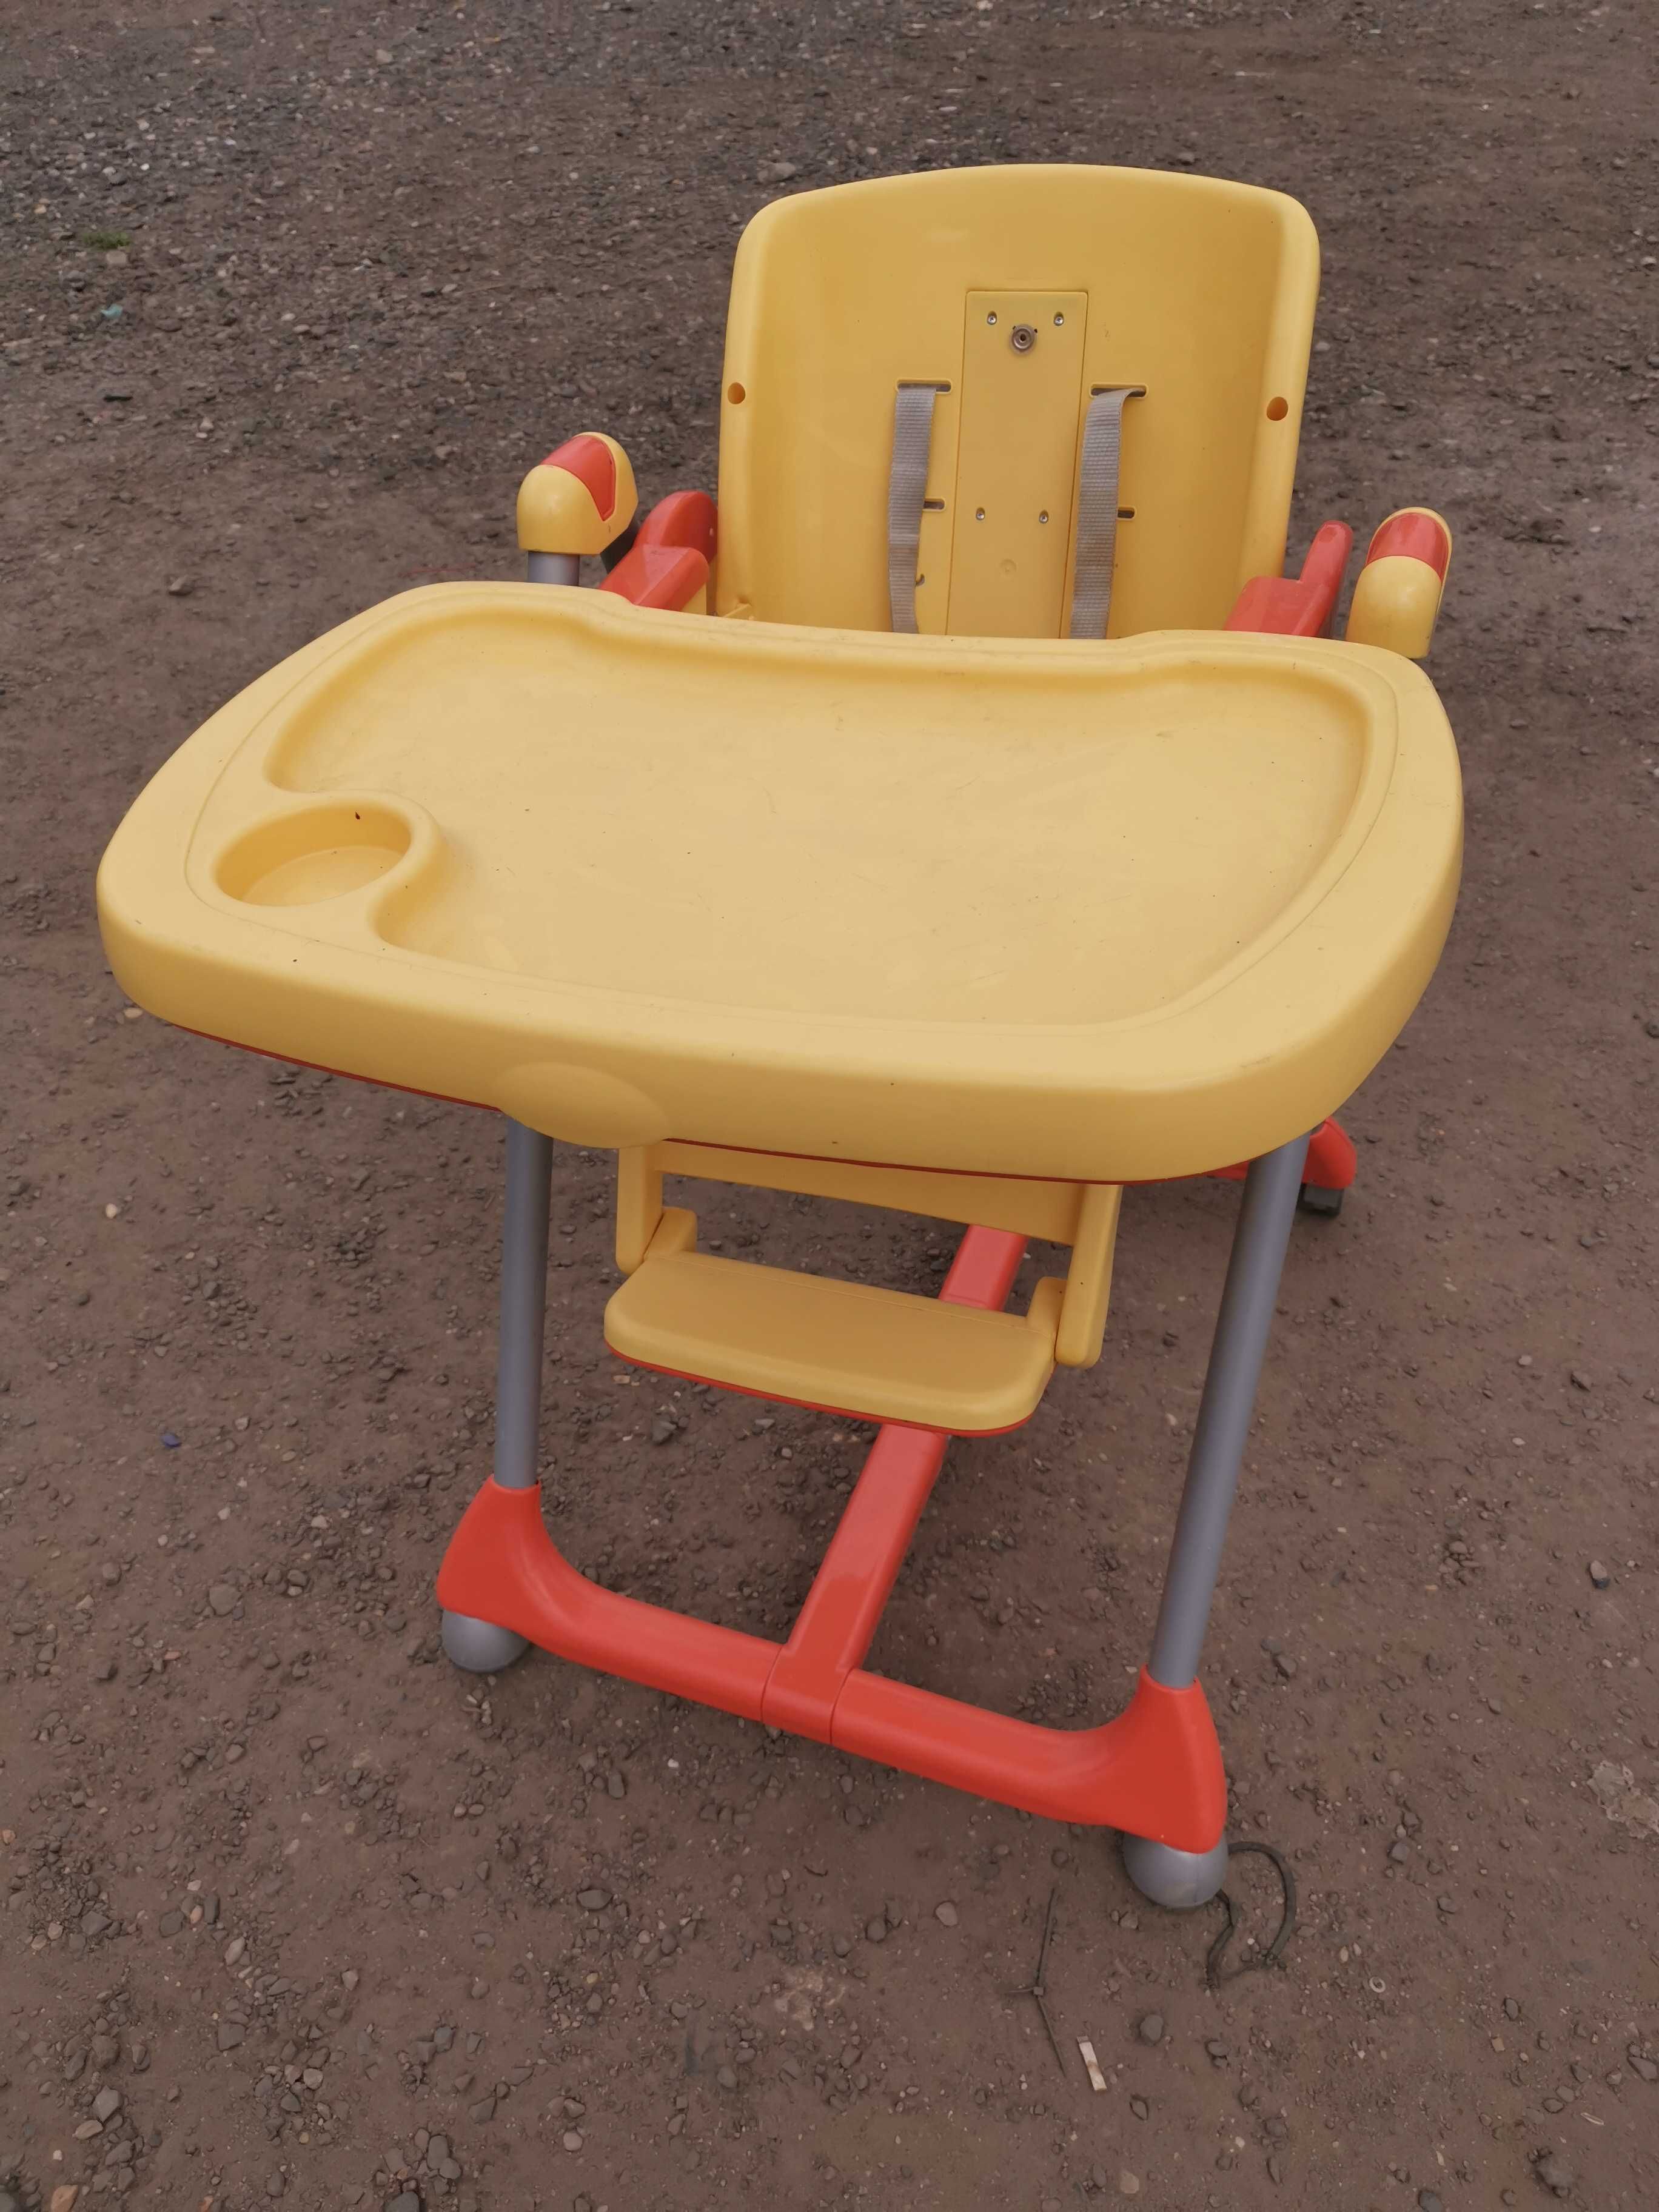 Krzesełka do karmienia dziecka regulowane i składane.